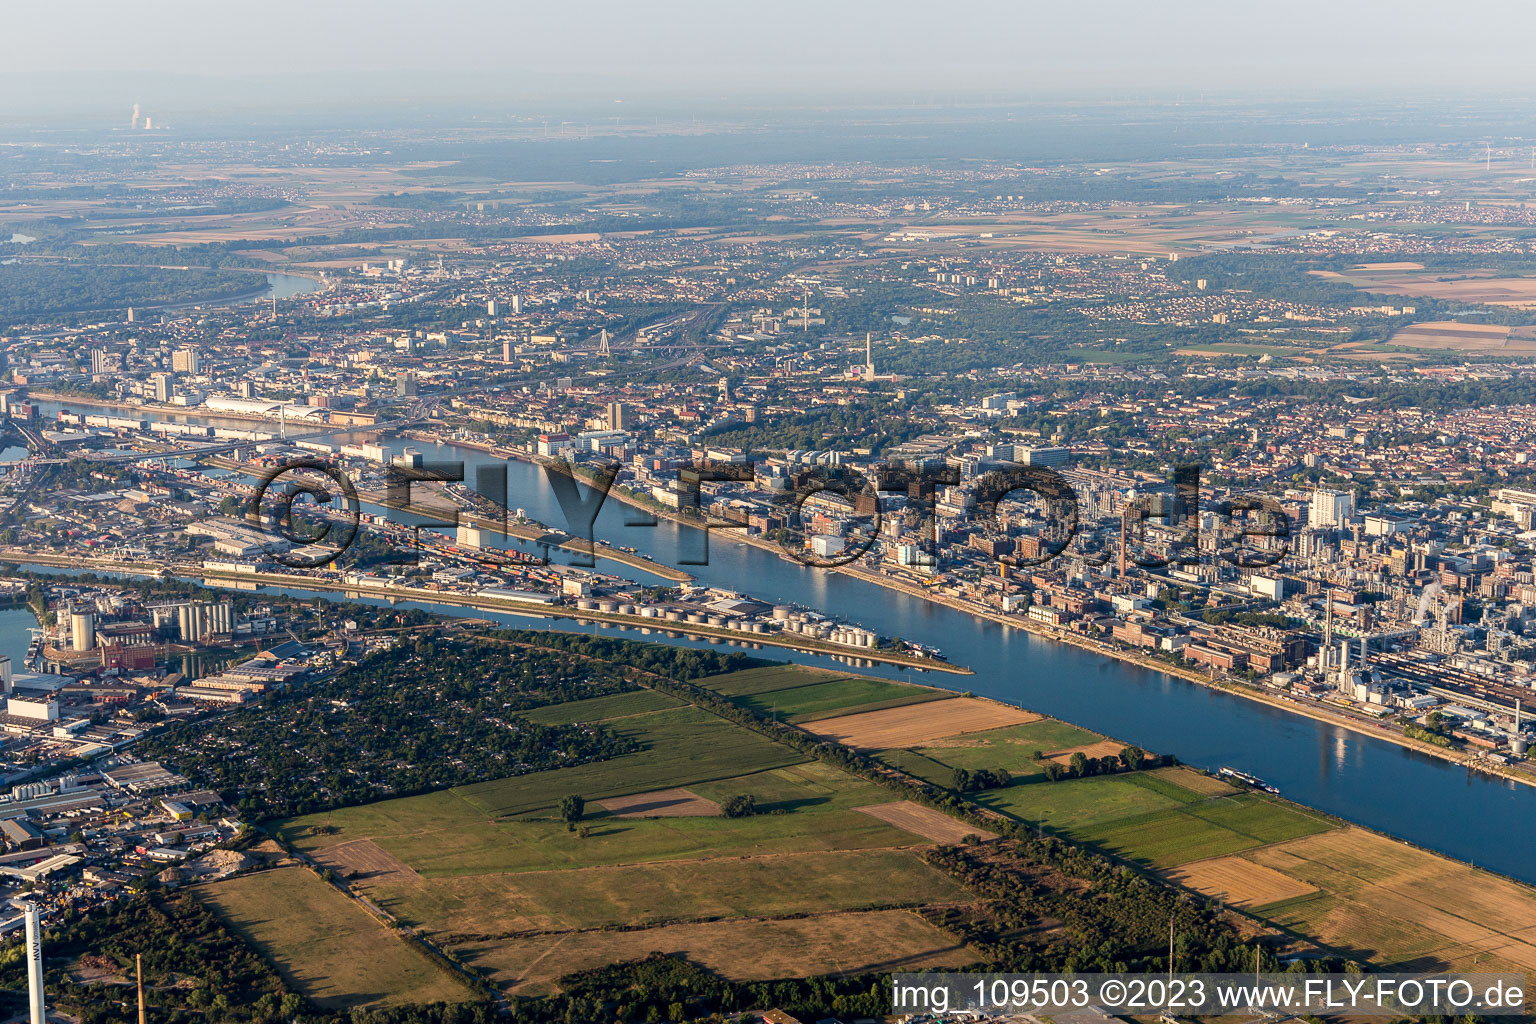 Ortsteil BASF in Ludwigshafen am Rhein im Bundesland Rheinland-Pfalz, Deutschland aus der Drohnenperspektive